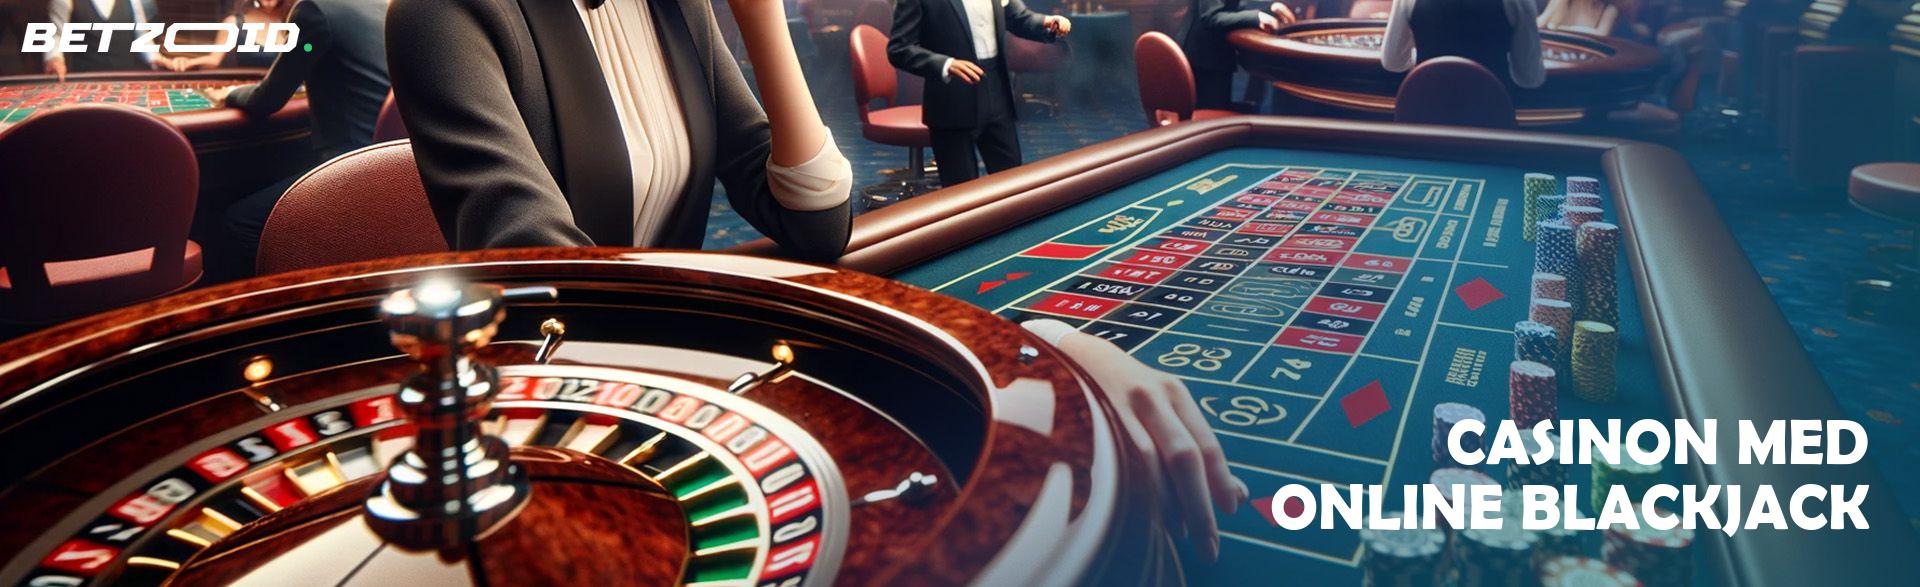 Casinon med Online Blackjack.